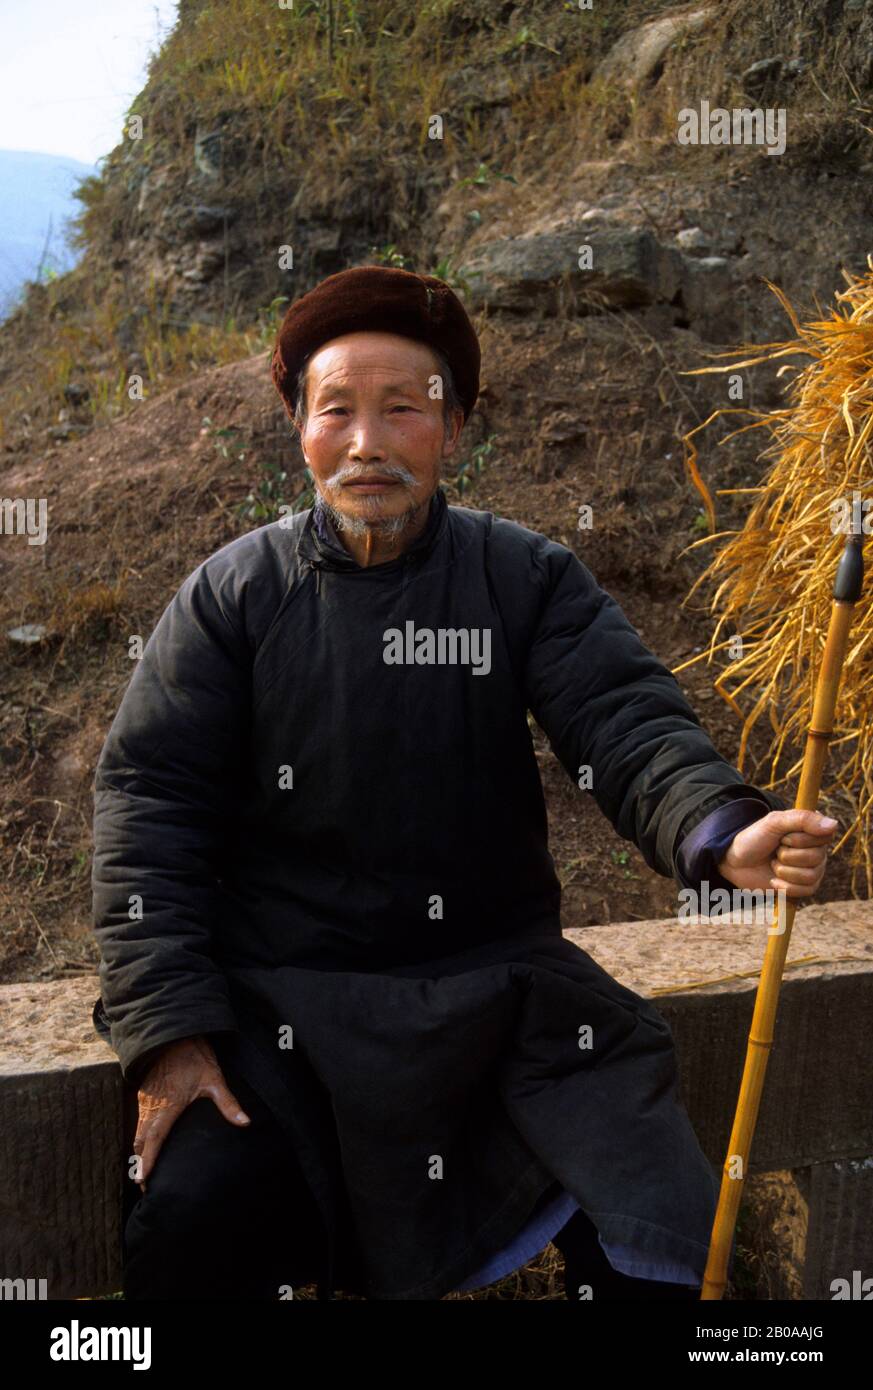 CHINA, NEAR DAZU, PORTRAIT OF CHINESE MAN Stock Photo